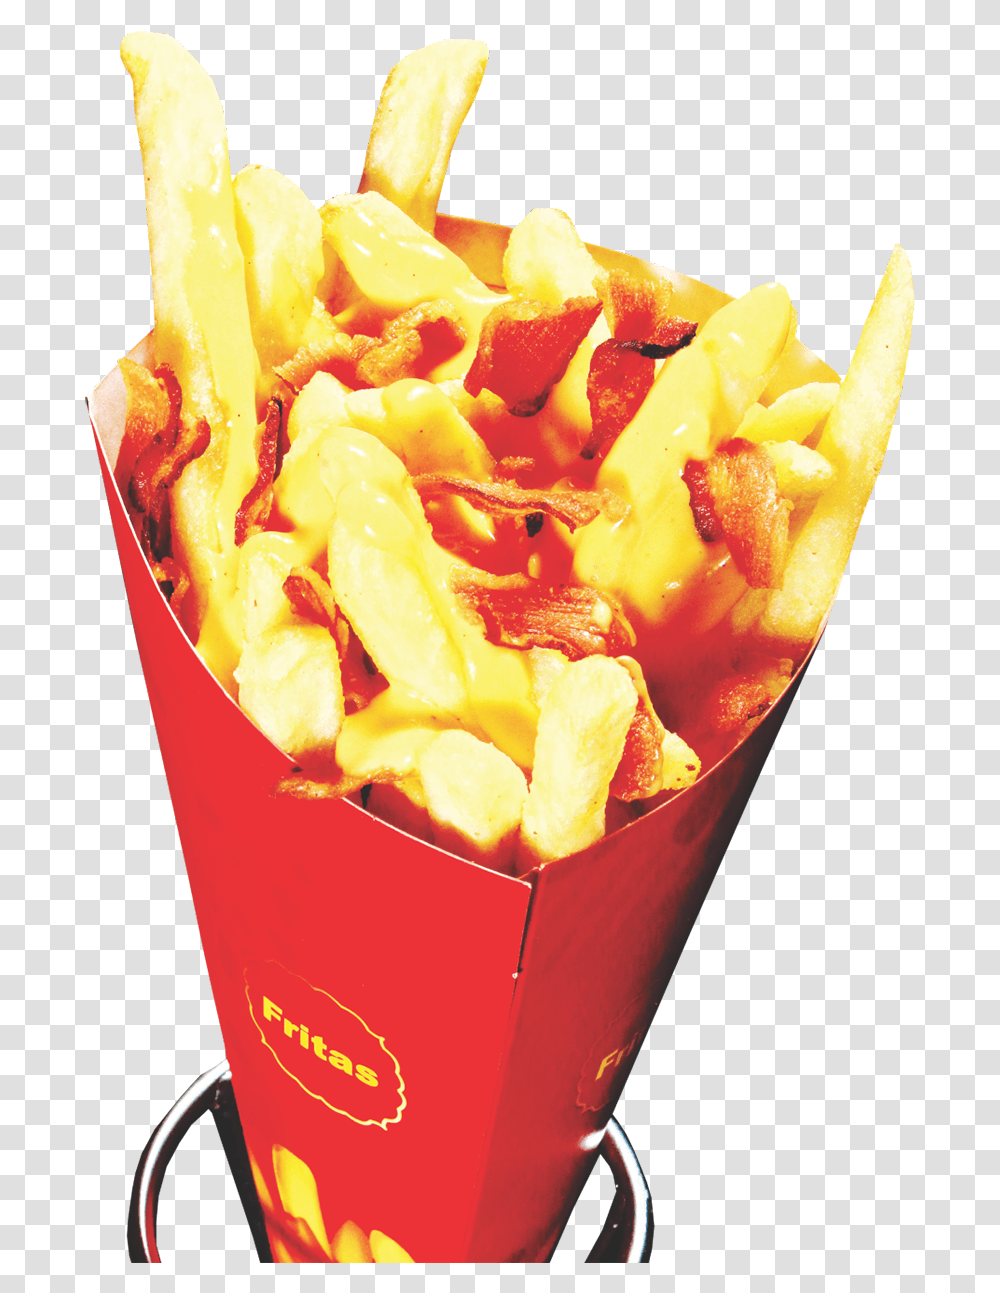 Thumb Image Batata Frita No Cone Com Cheddar, Fries, Food Transparent Png